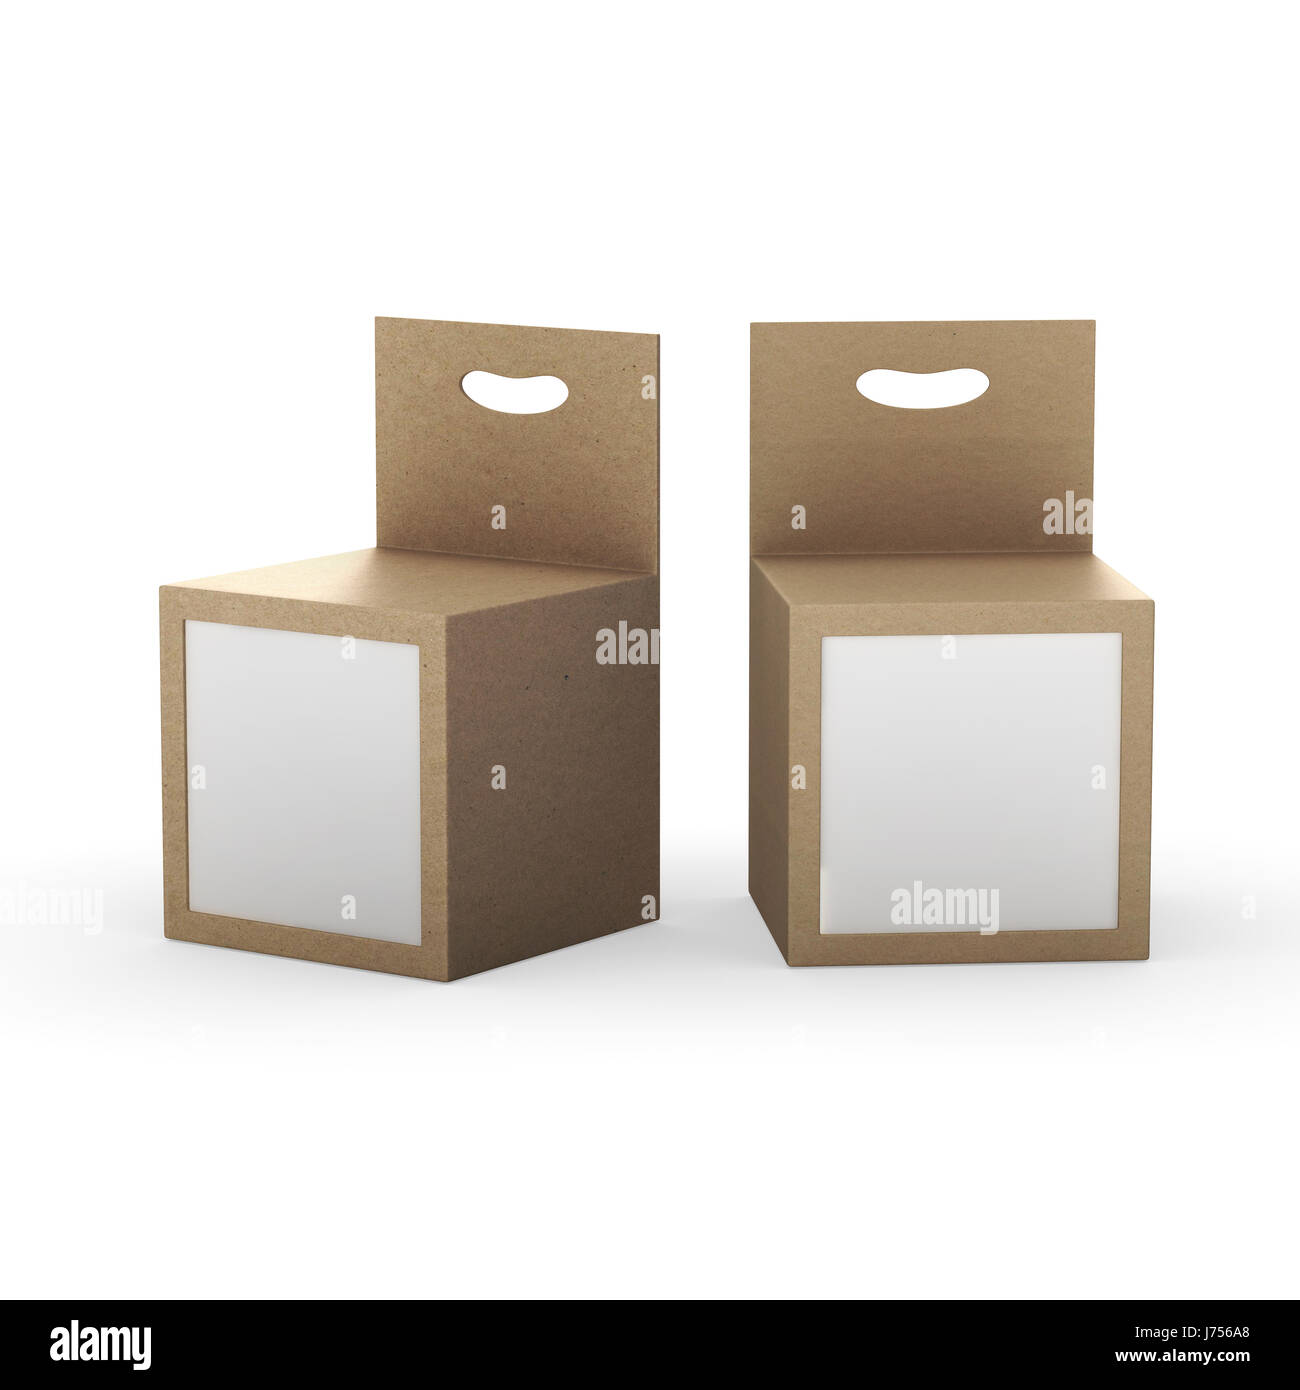 Packpapier-Box-Verpackung mit Frontscheibe und Aufhänger, Schneidepfad enthalten. Template-Paket für verschiedene Produkte wie Tintenpatrone, elektronische oder Stockfoto